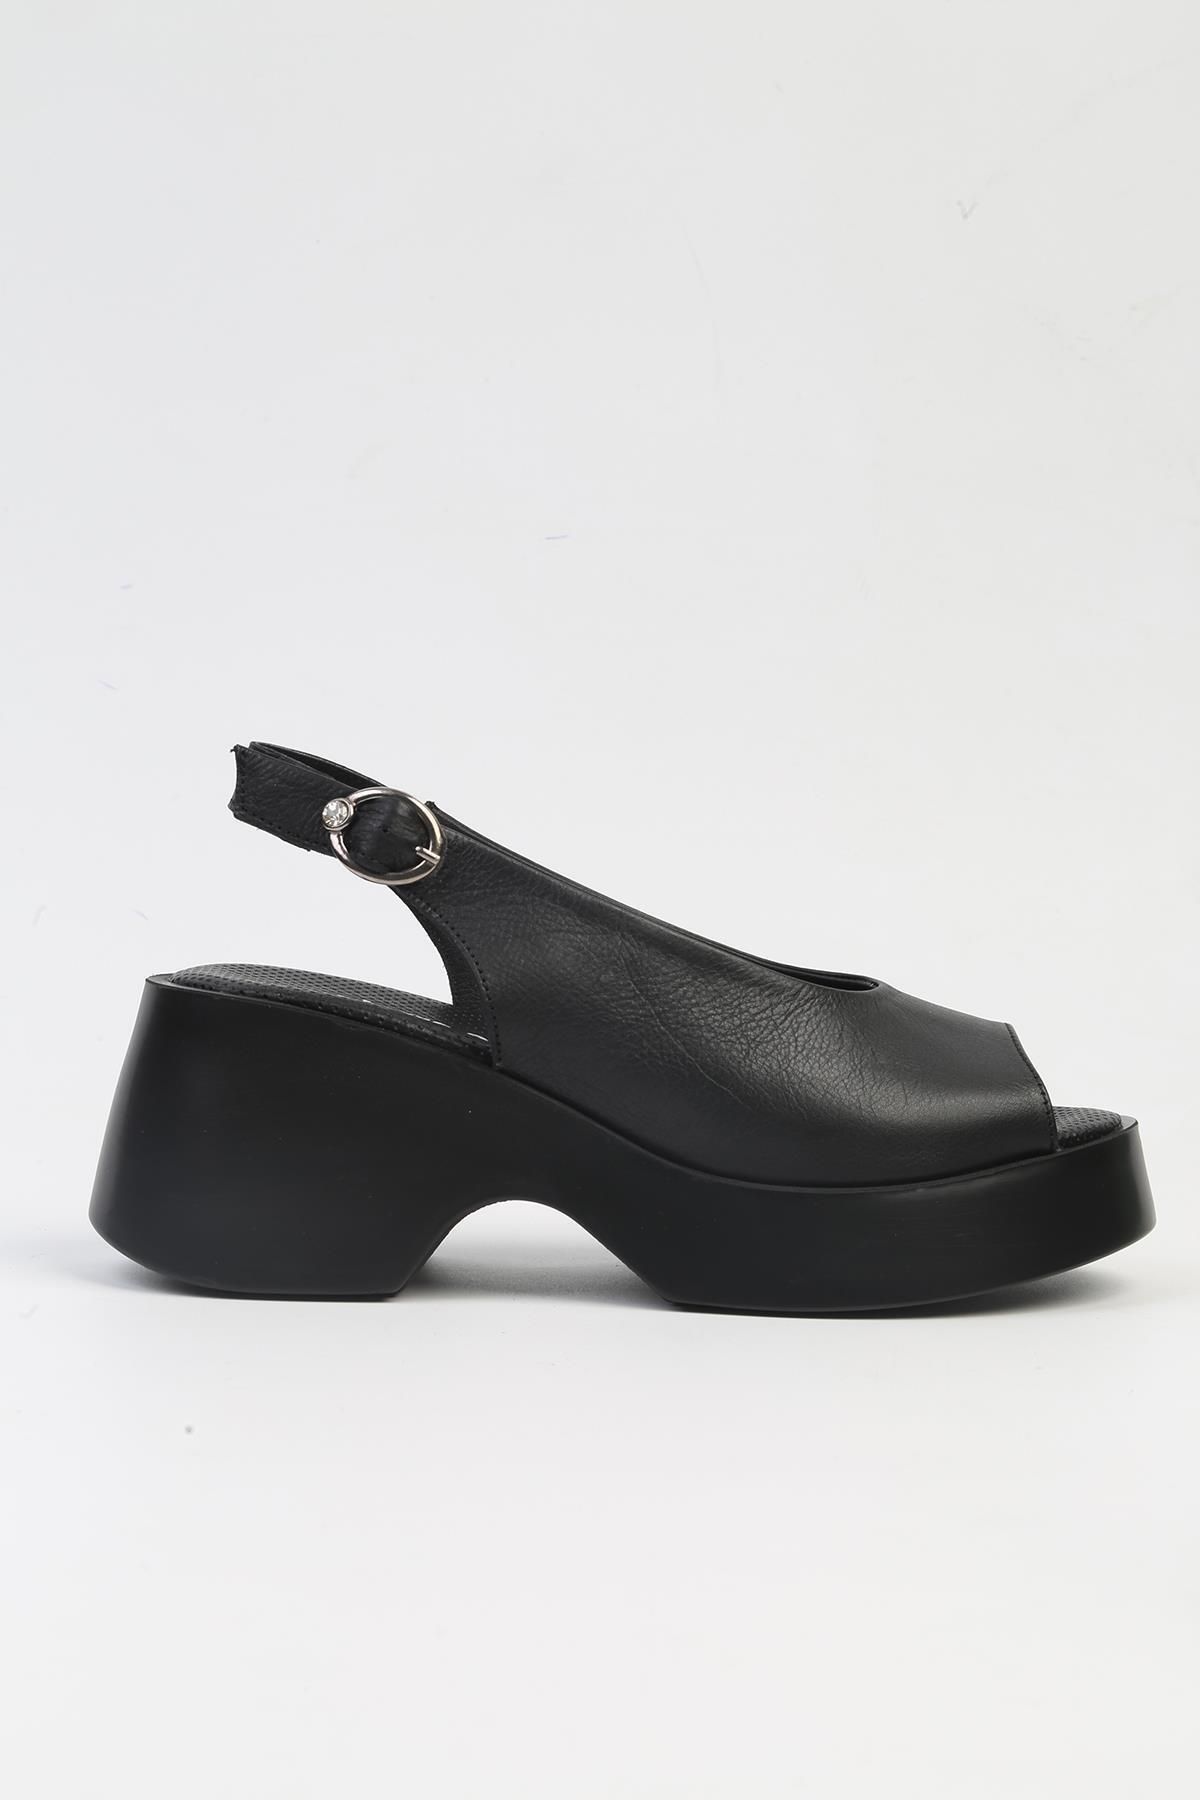 Pierre Cardin ® | PC-7199- 3968 Siyah-Kadın Topuklu Ayakkabı